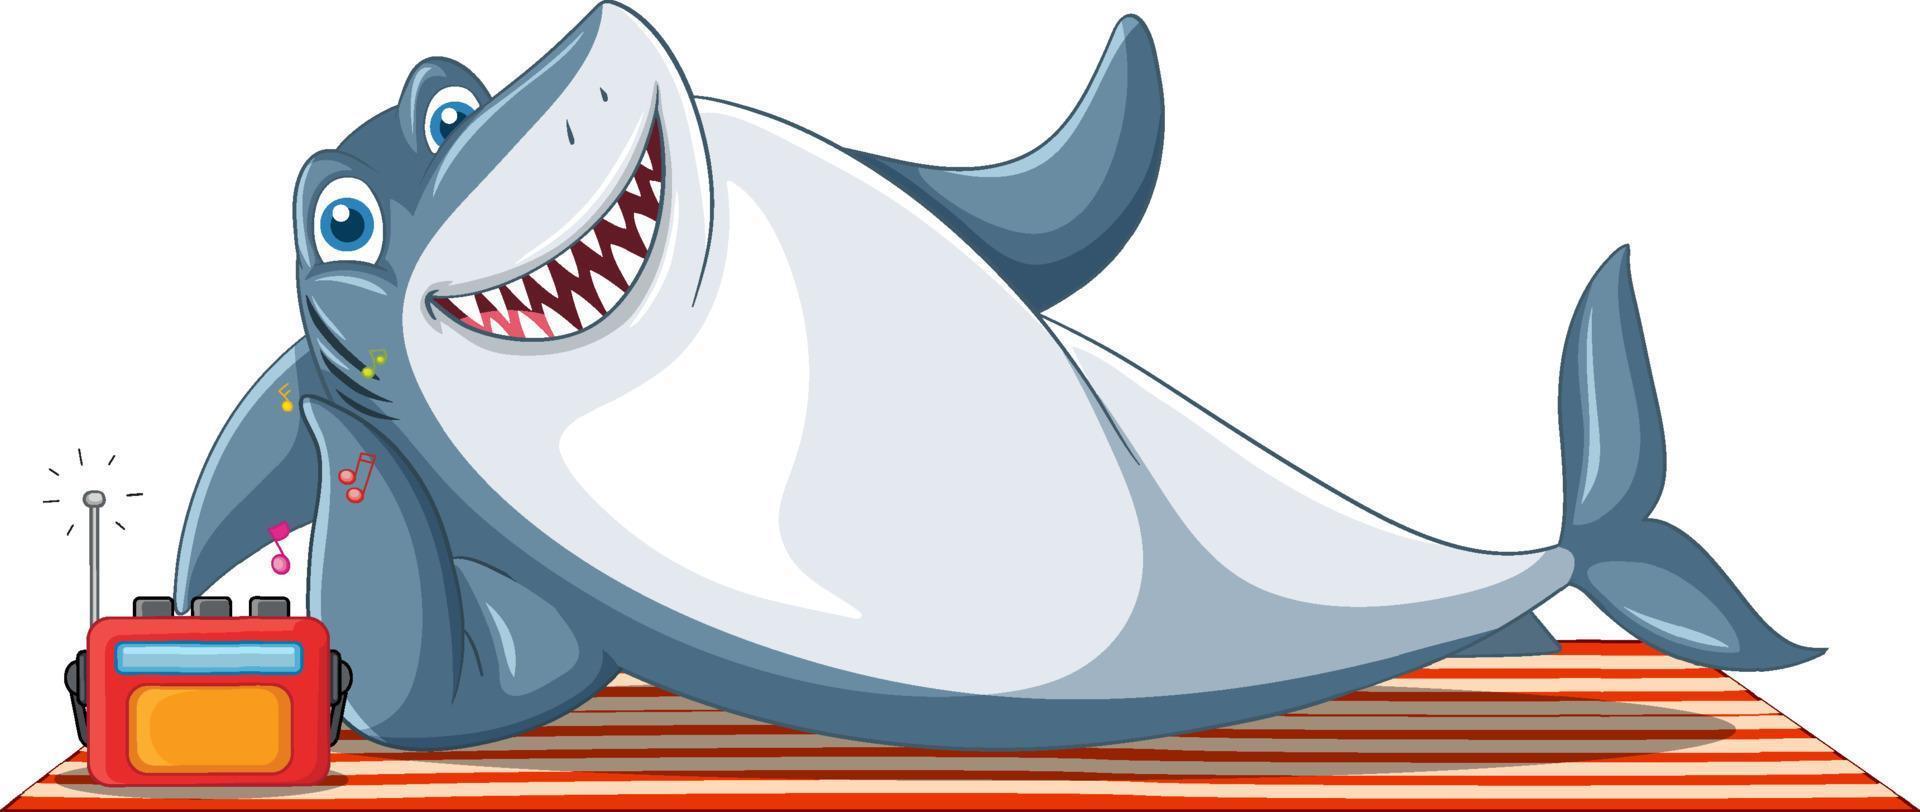 personaggio dei cartoni animati di squalo sorridente vettore